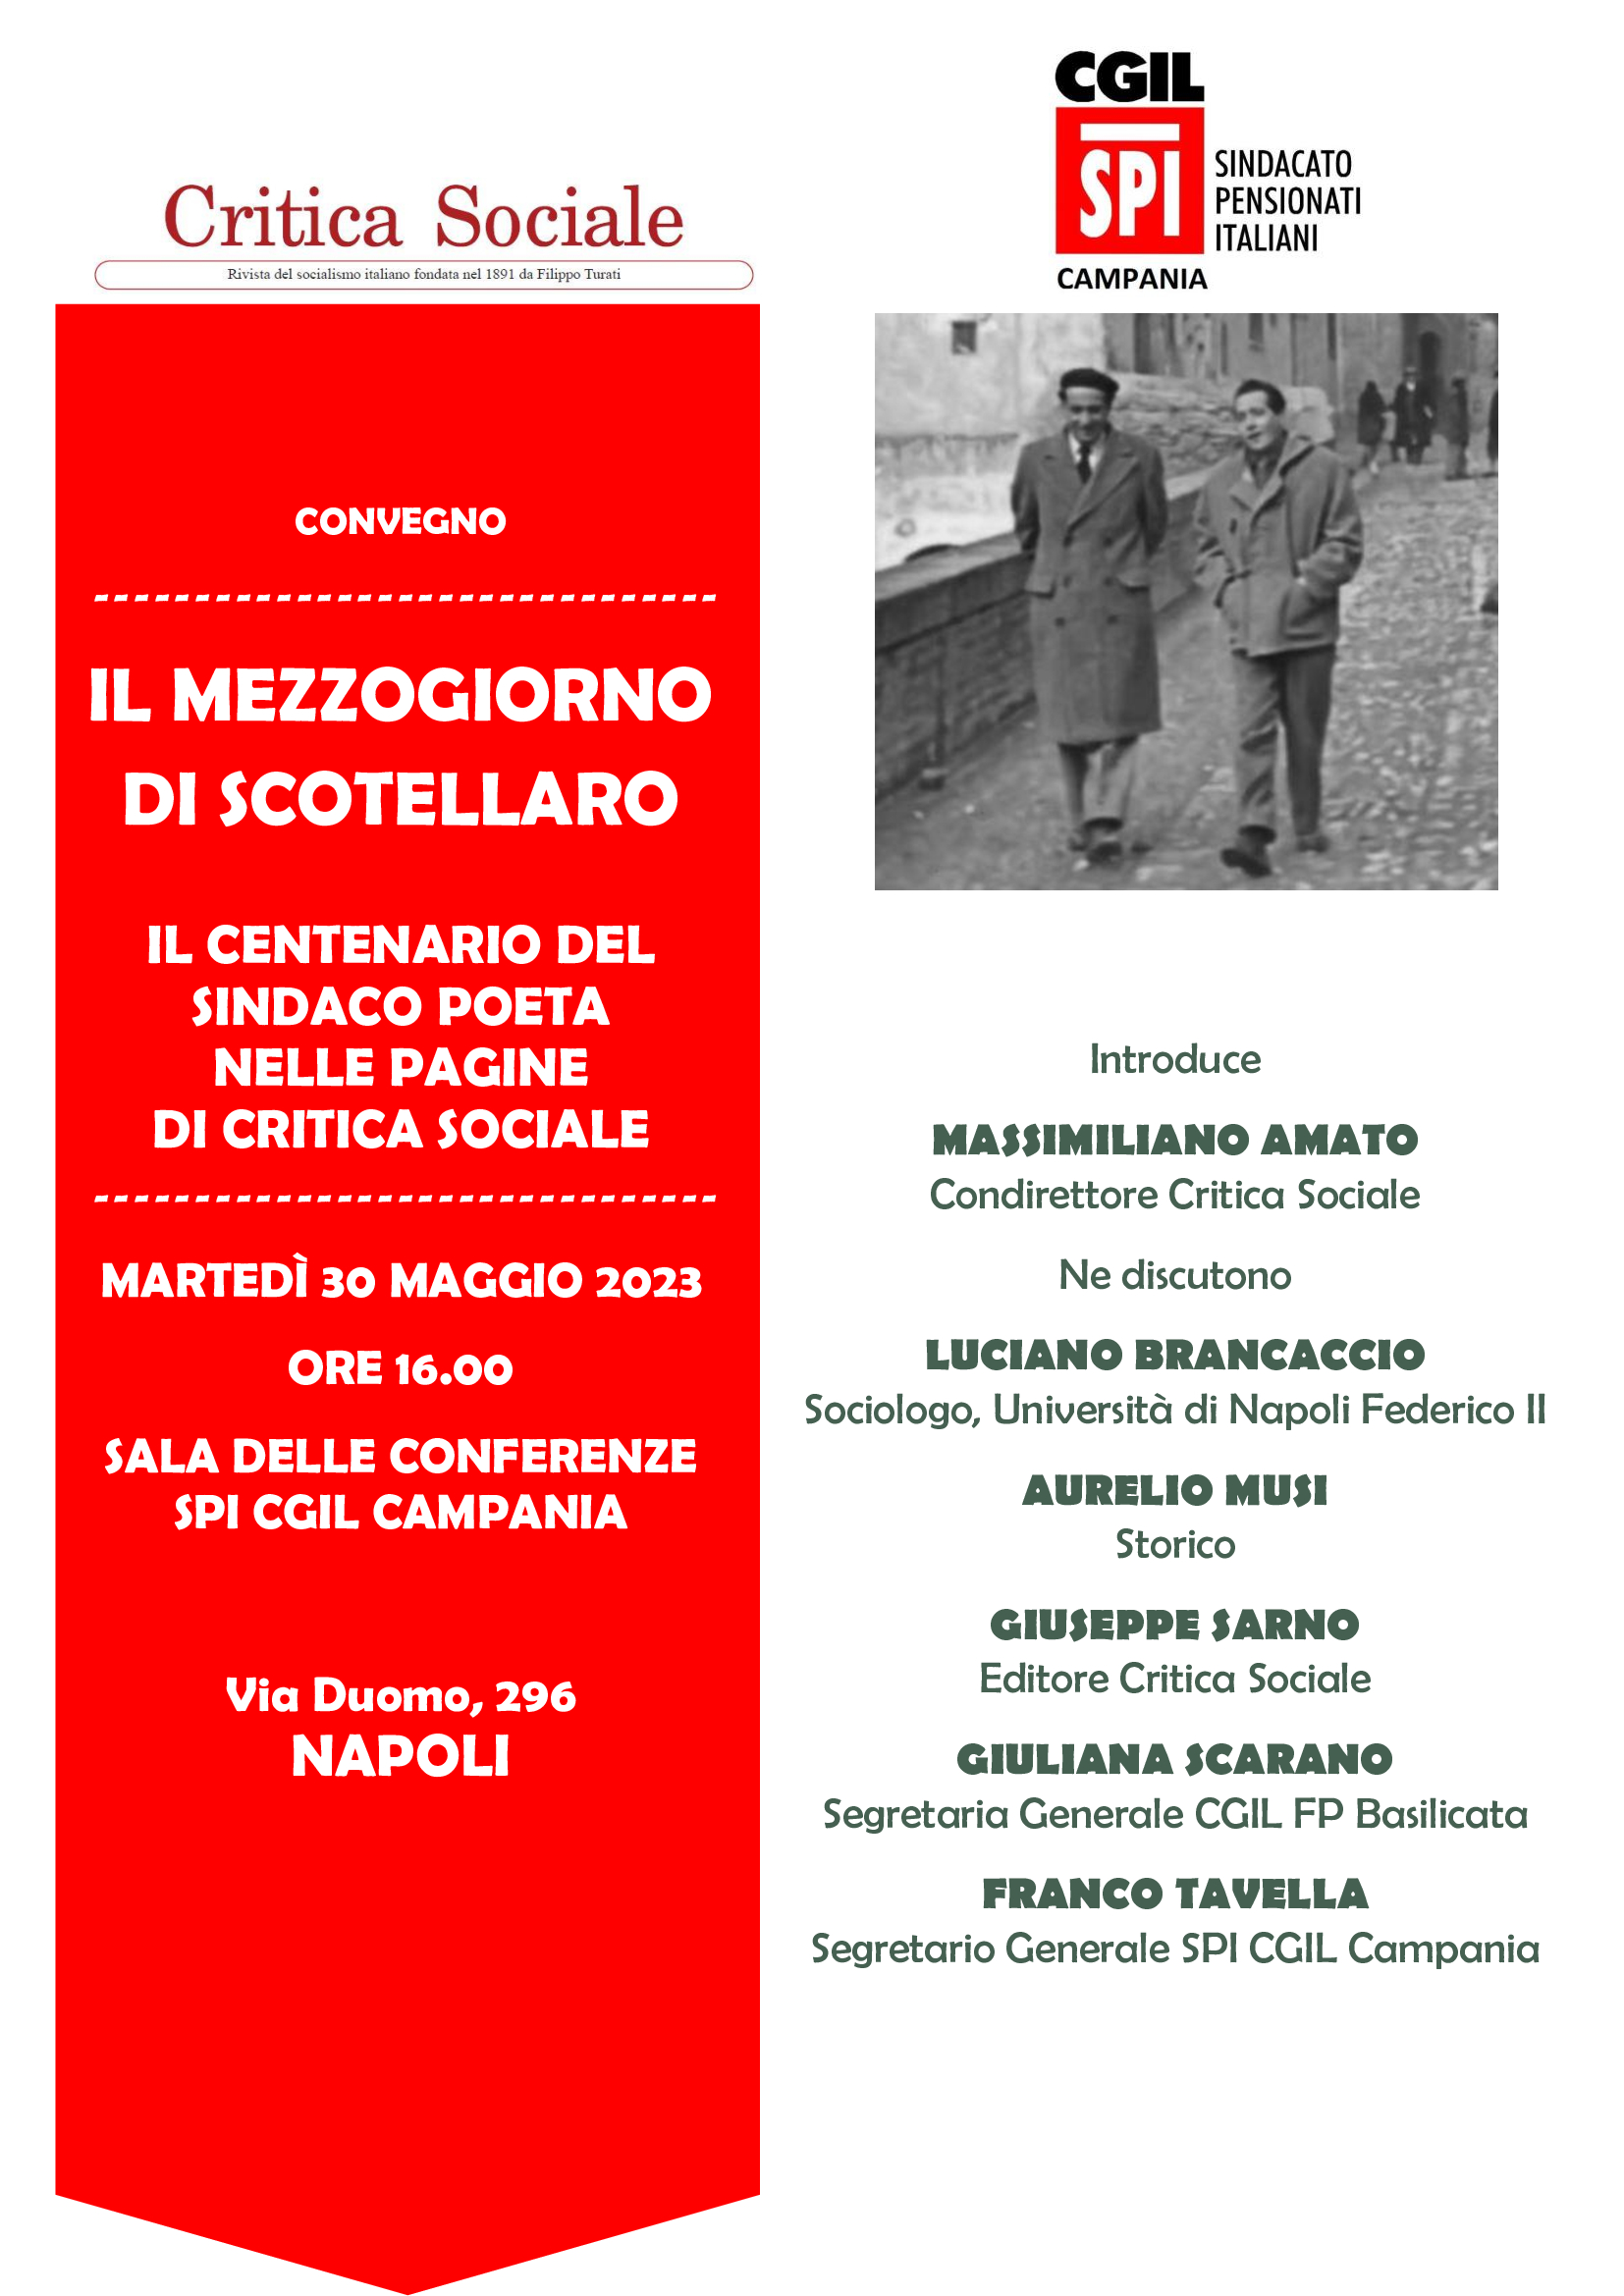 Il Mezzogiorno di Scotellaro nelle pagine di Critica Sociale, convegno a Napoli il 30 maggio